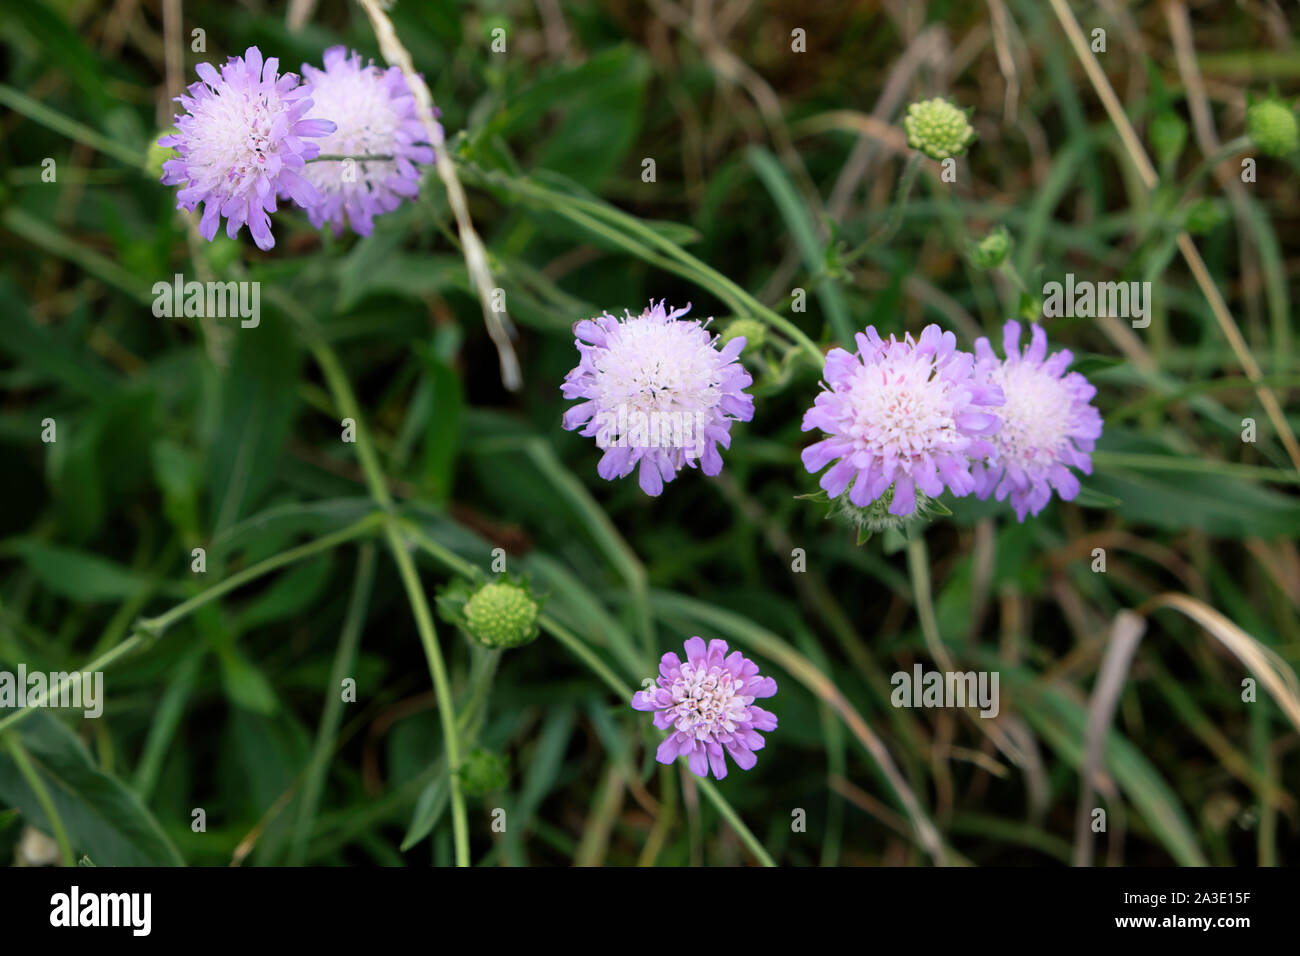 Field scabious (Knautia arvensis) fleurs sauvages qui poussent à l'état sauvage dans la campagne du Sussex de l'Est Angleterre UK KATHY DEWITT Banque D'Images